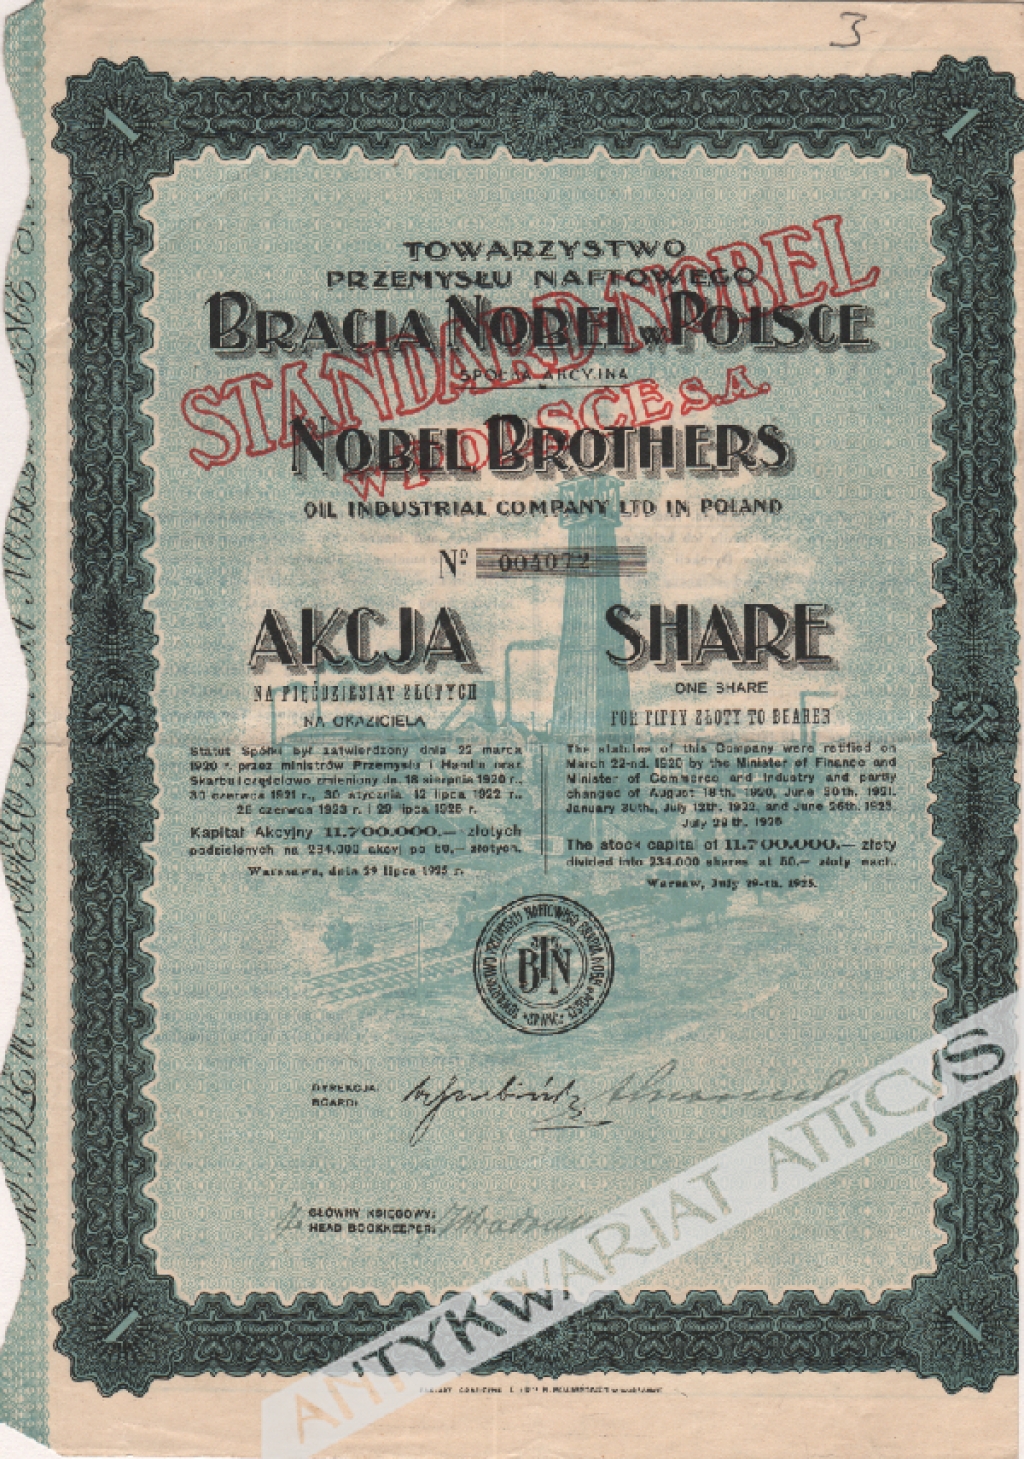 [akcja, 1925] Towarzystwo Przemysłu Naftowego Bracia Nobel w Polsce Akcja na 50 zł. Nobel Brothers Oil Industrial Company Ltd in Poland. One share for fifty złoty to bearer.